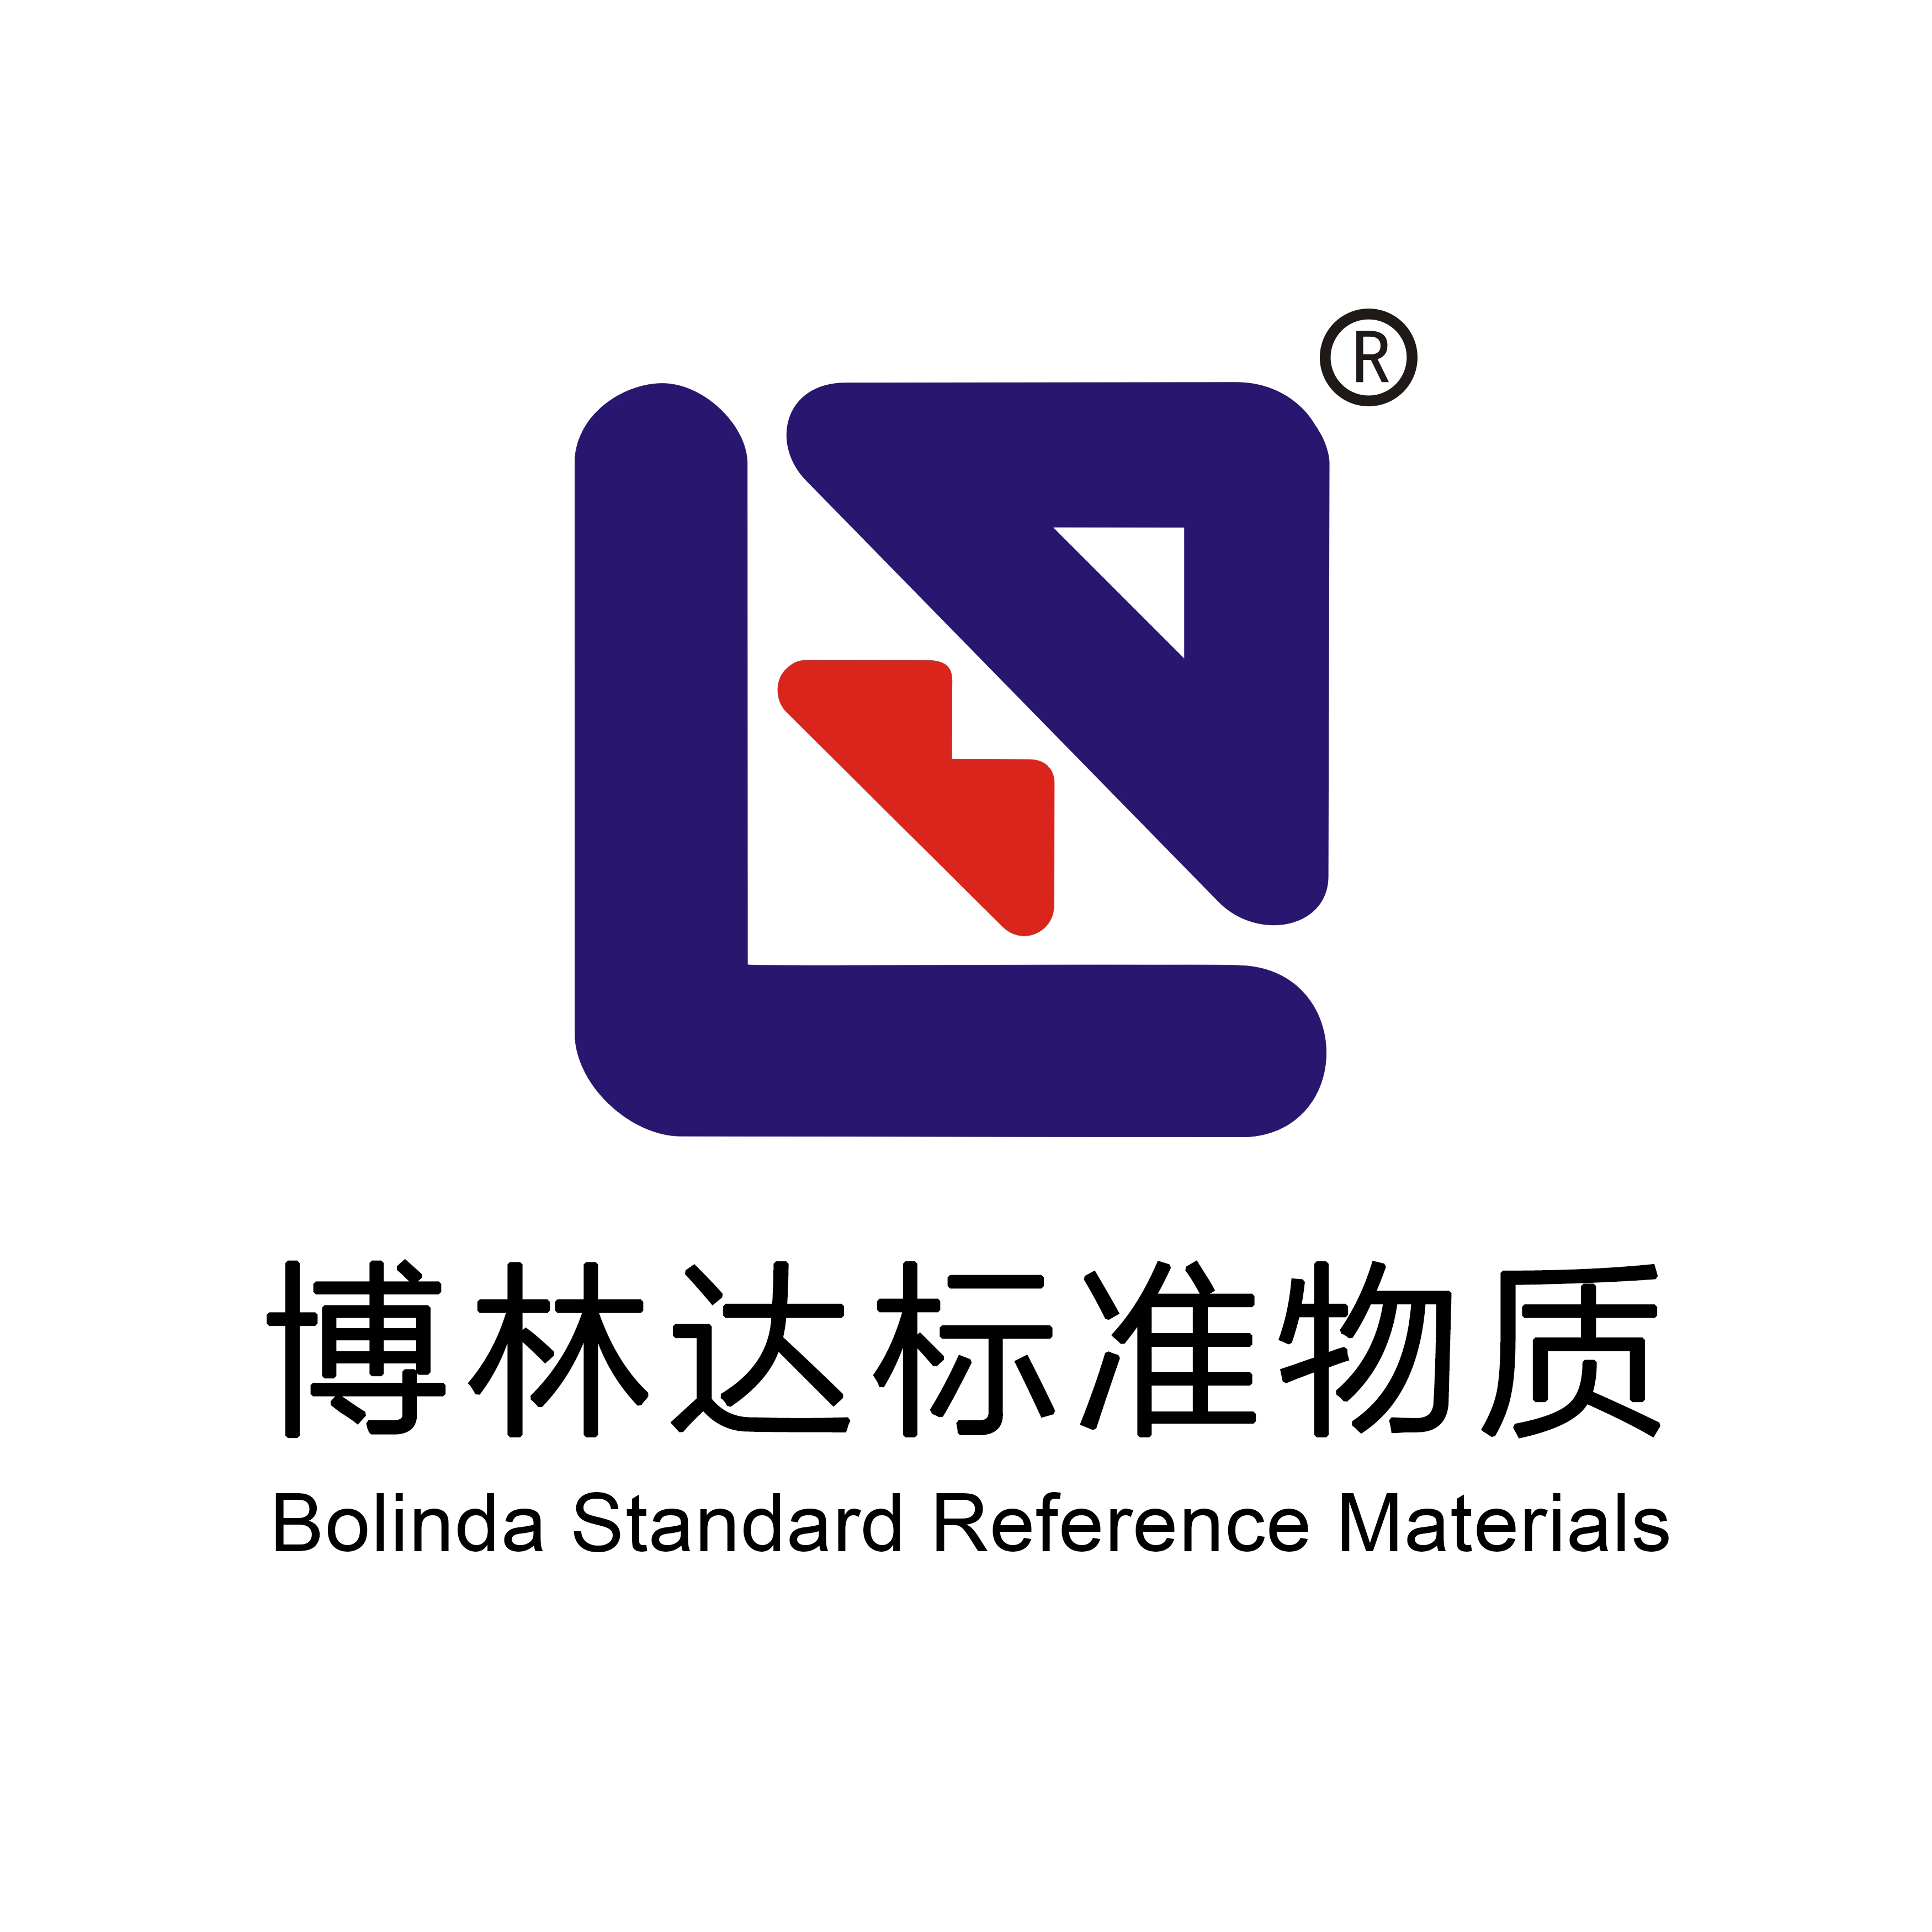 环境检测标准物质 - 【博林达直营店】博林达标准物质商城 | 国家标准物质网